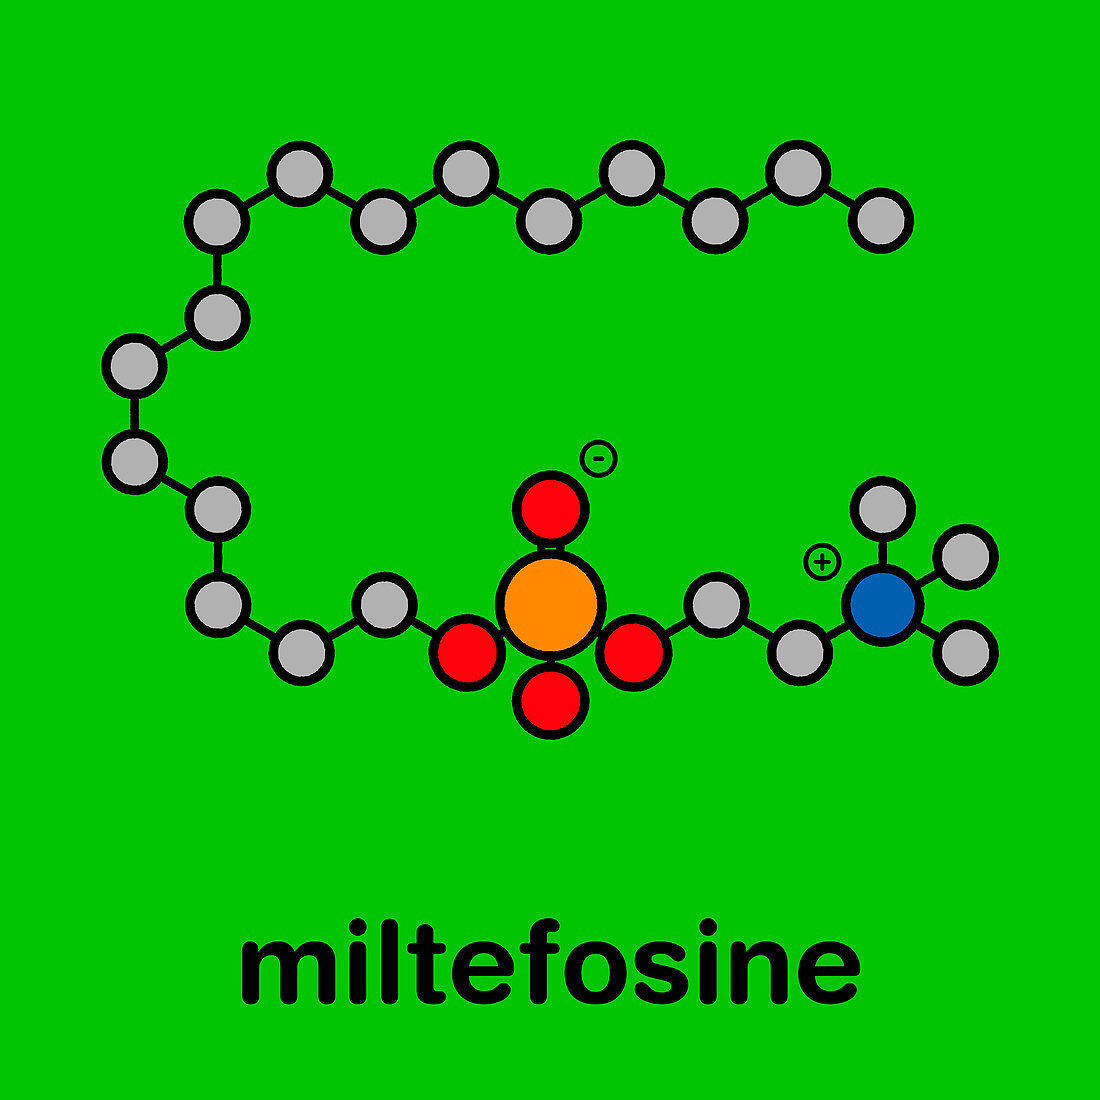 Miltefosine leishmaniasis drug, molecular model